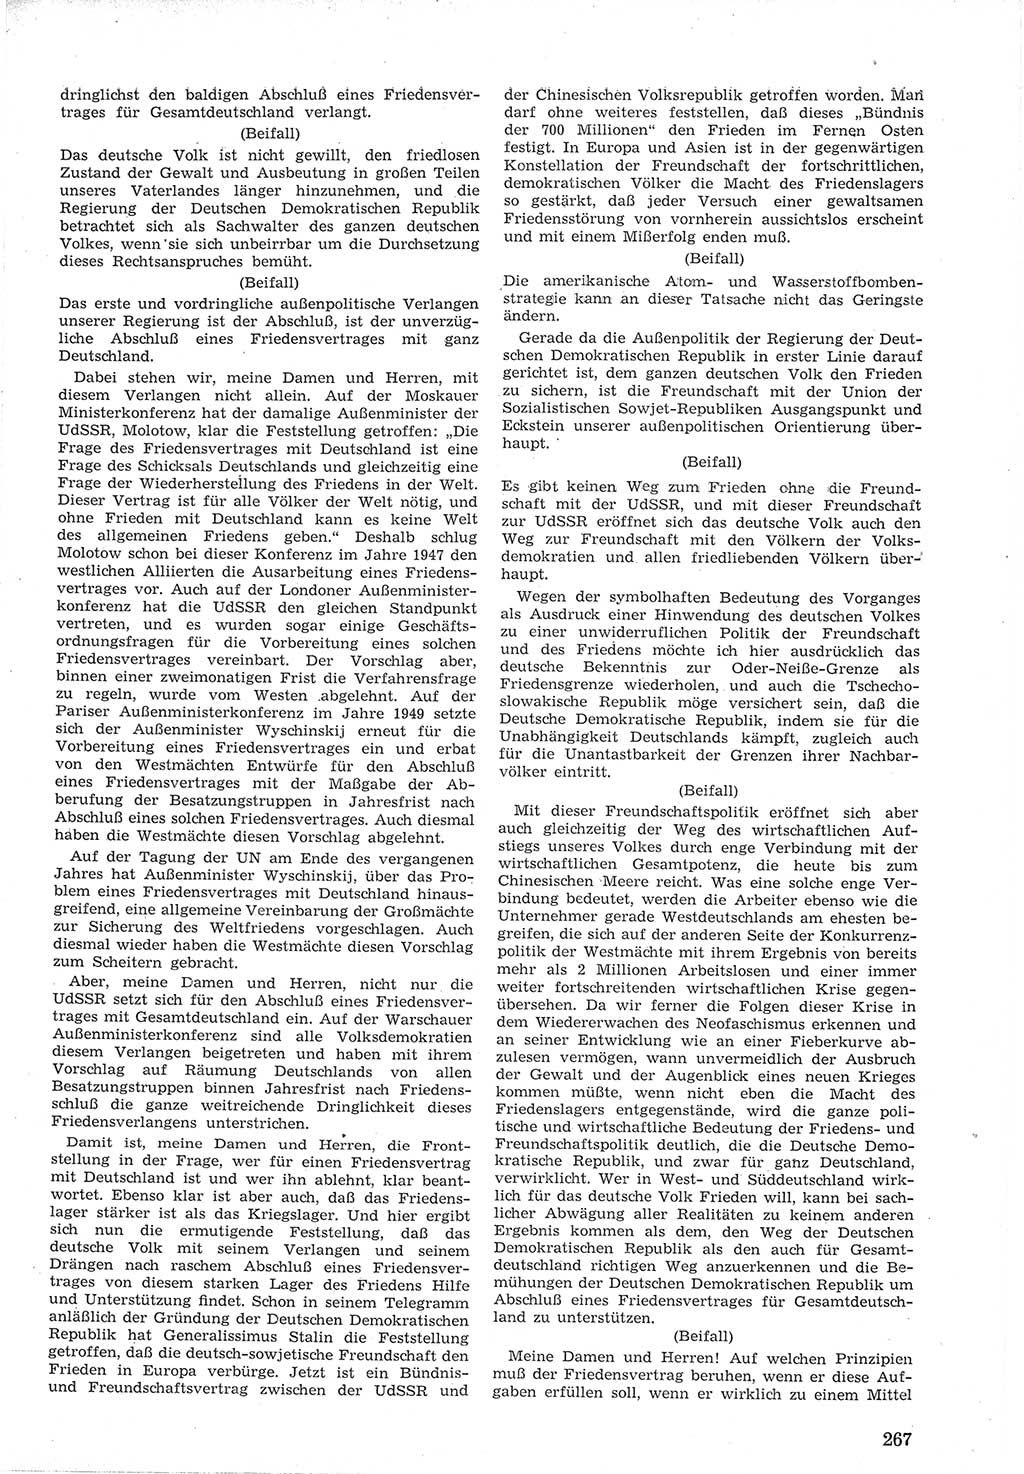 Provisorische Volkskammer (VK) der Deutschen Demokratischen Republik (DDR) 1949-1950, Dokument 281 (Prov. VK DDR 1949-1950, Dok. 281)